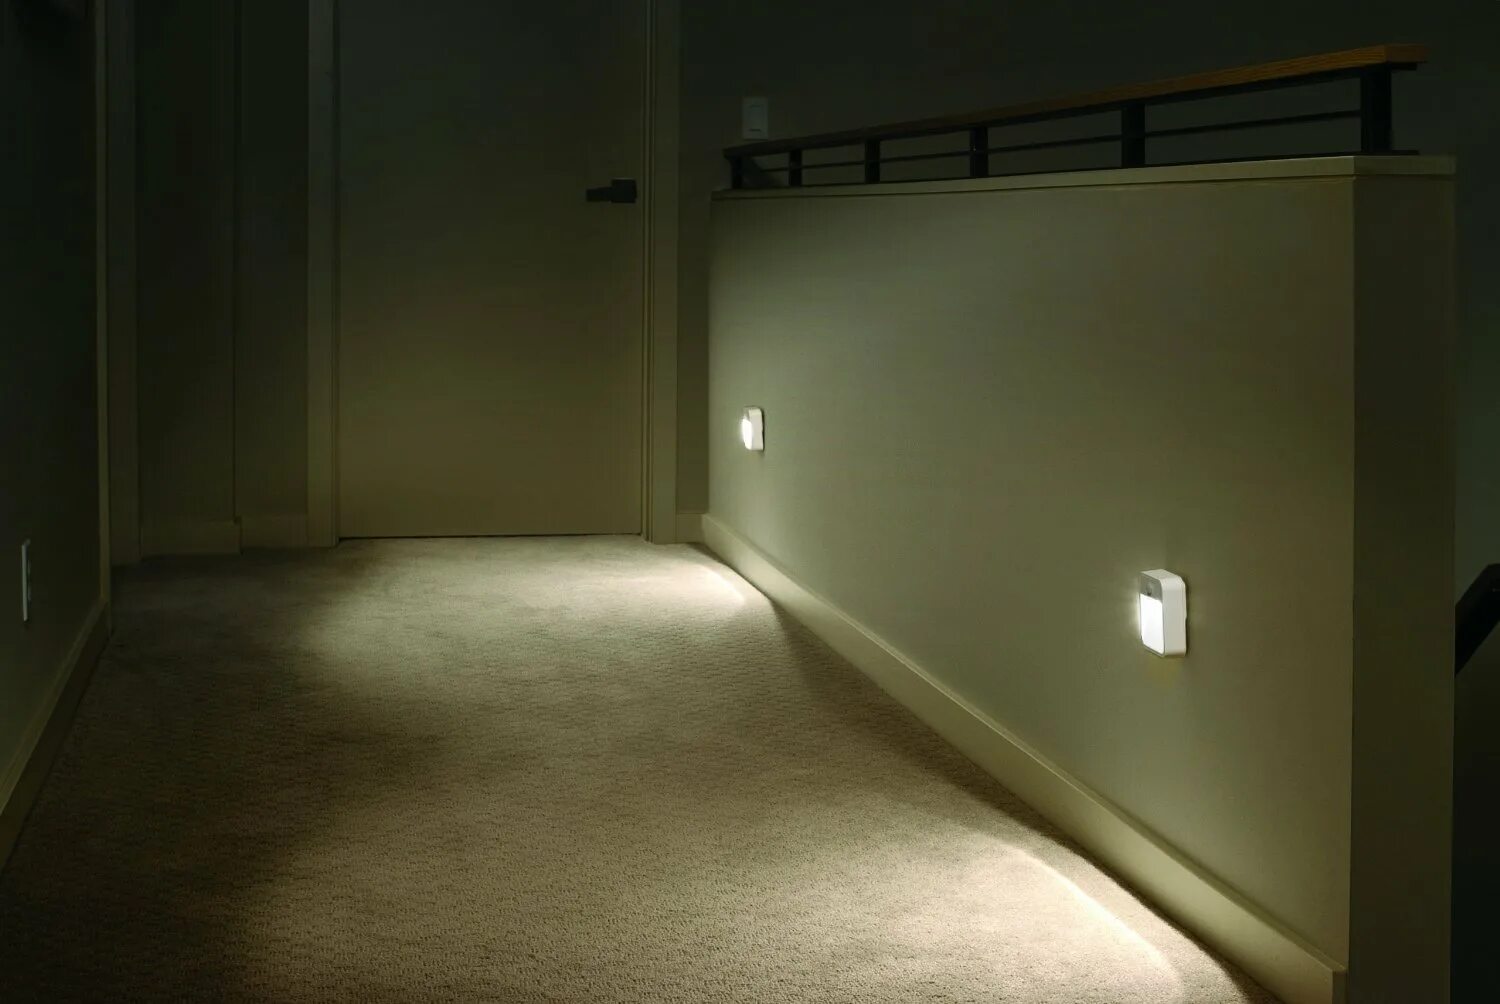 Подсветка с датчиком движения. Ночная подсветка коридора. Подсветка пола в коридоре с датчиком движения. Ночное освещение в коридоре. Датчик движения в коридоре.